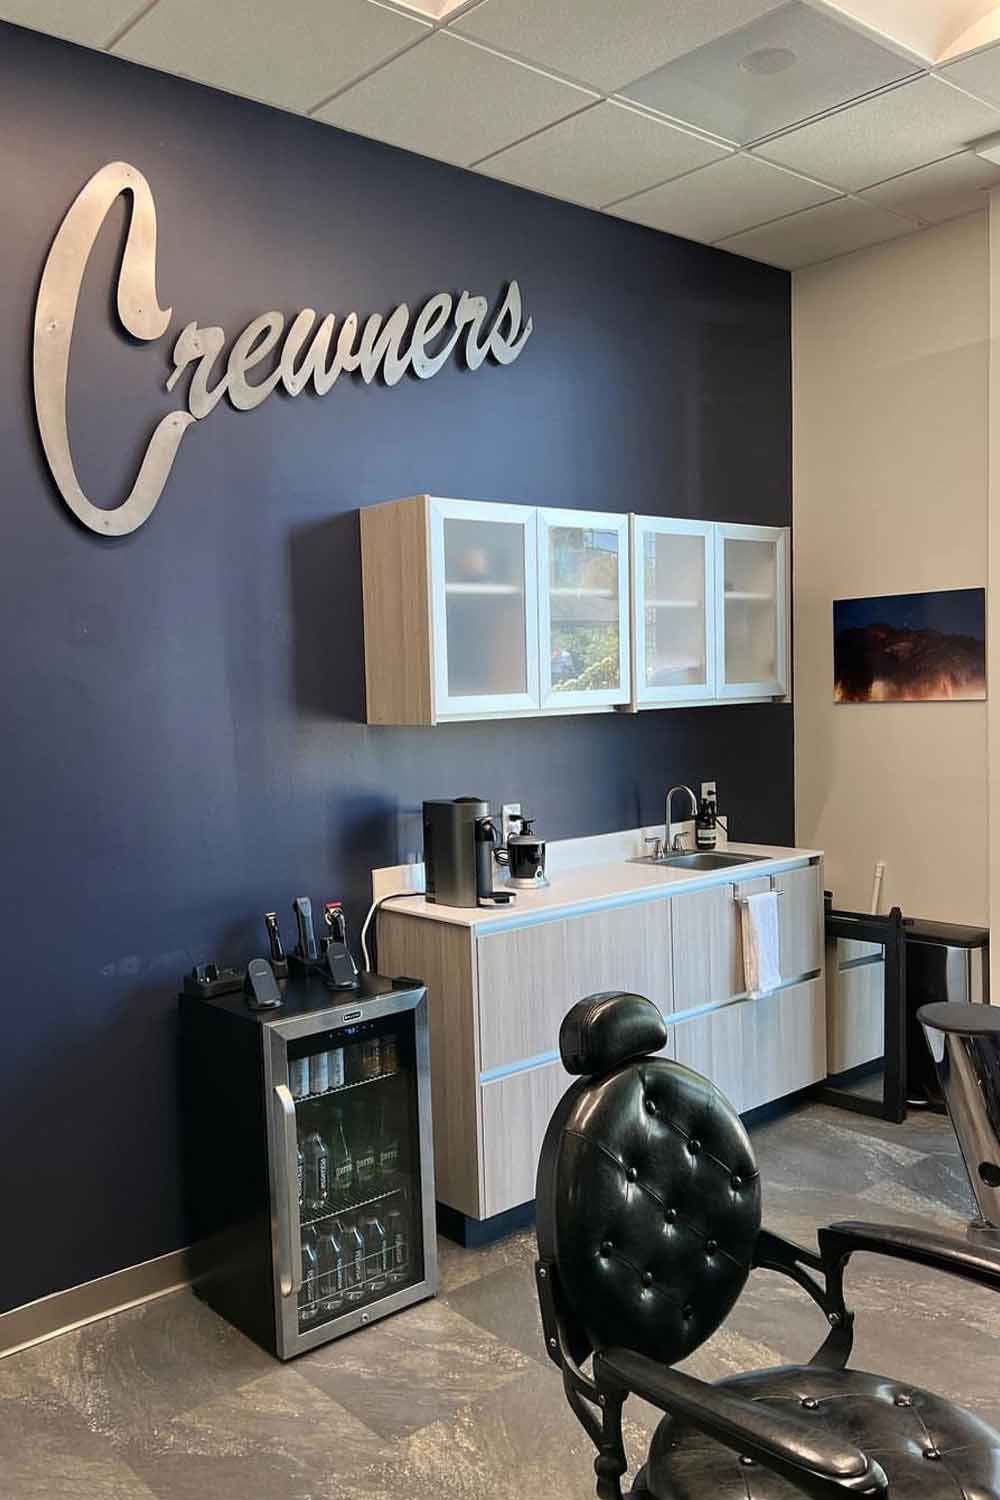 Crewners Barber Shop 1